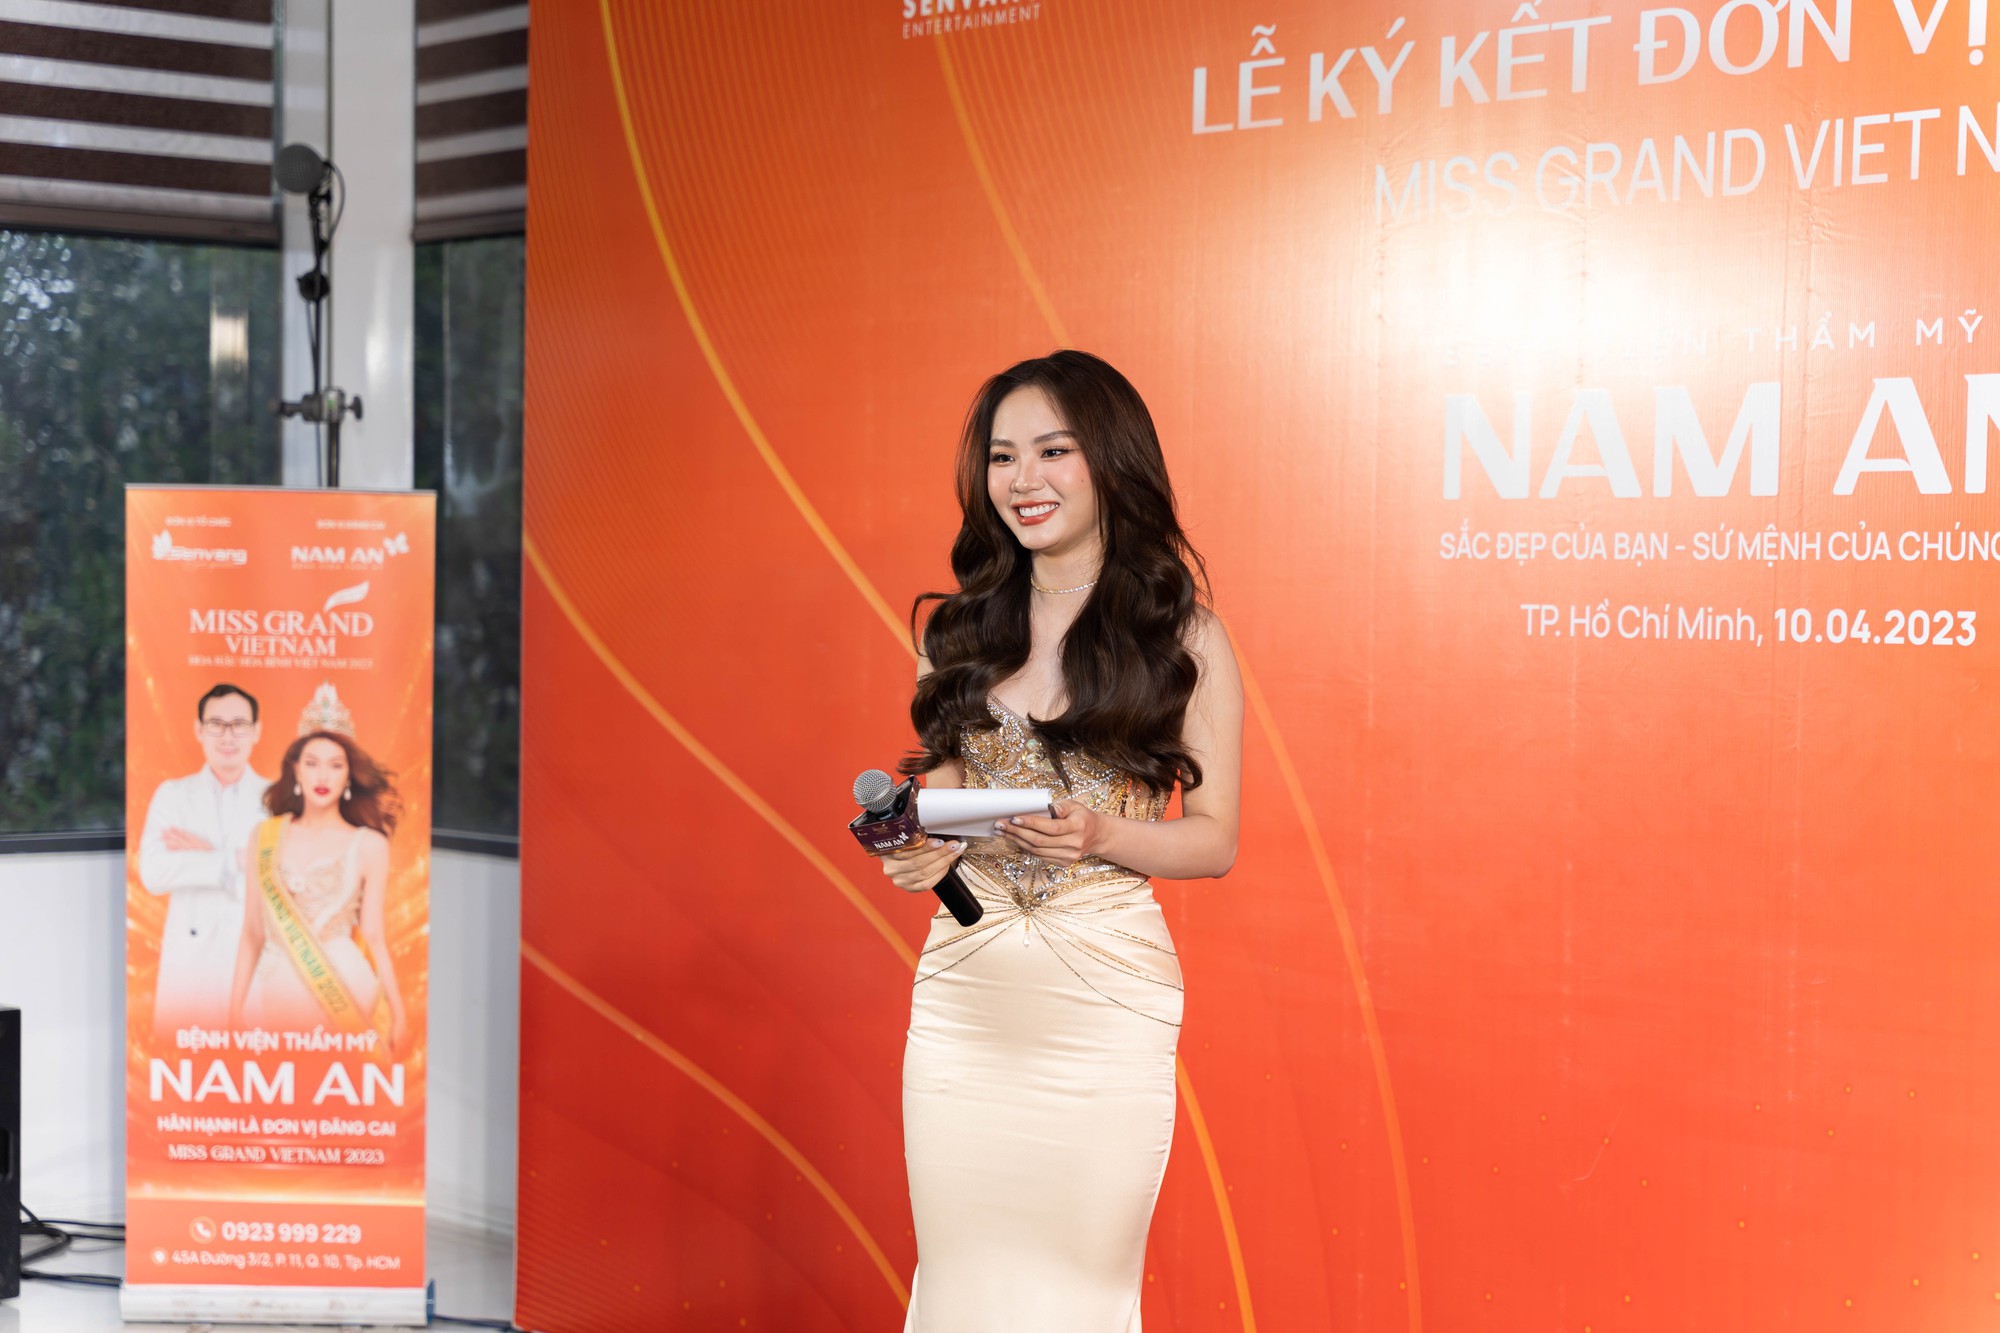 Hoa hậu Mai Phương xinh đẹp trong vai trò MC sự kiện  - Ảnh 2.